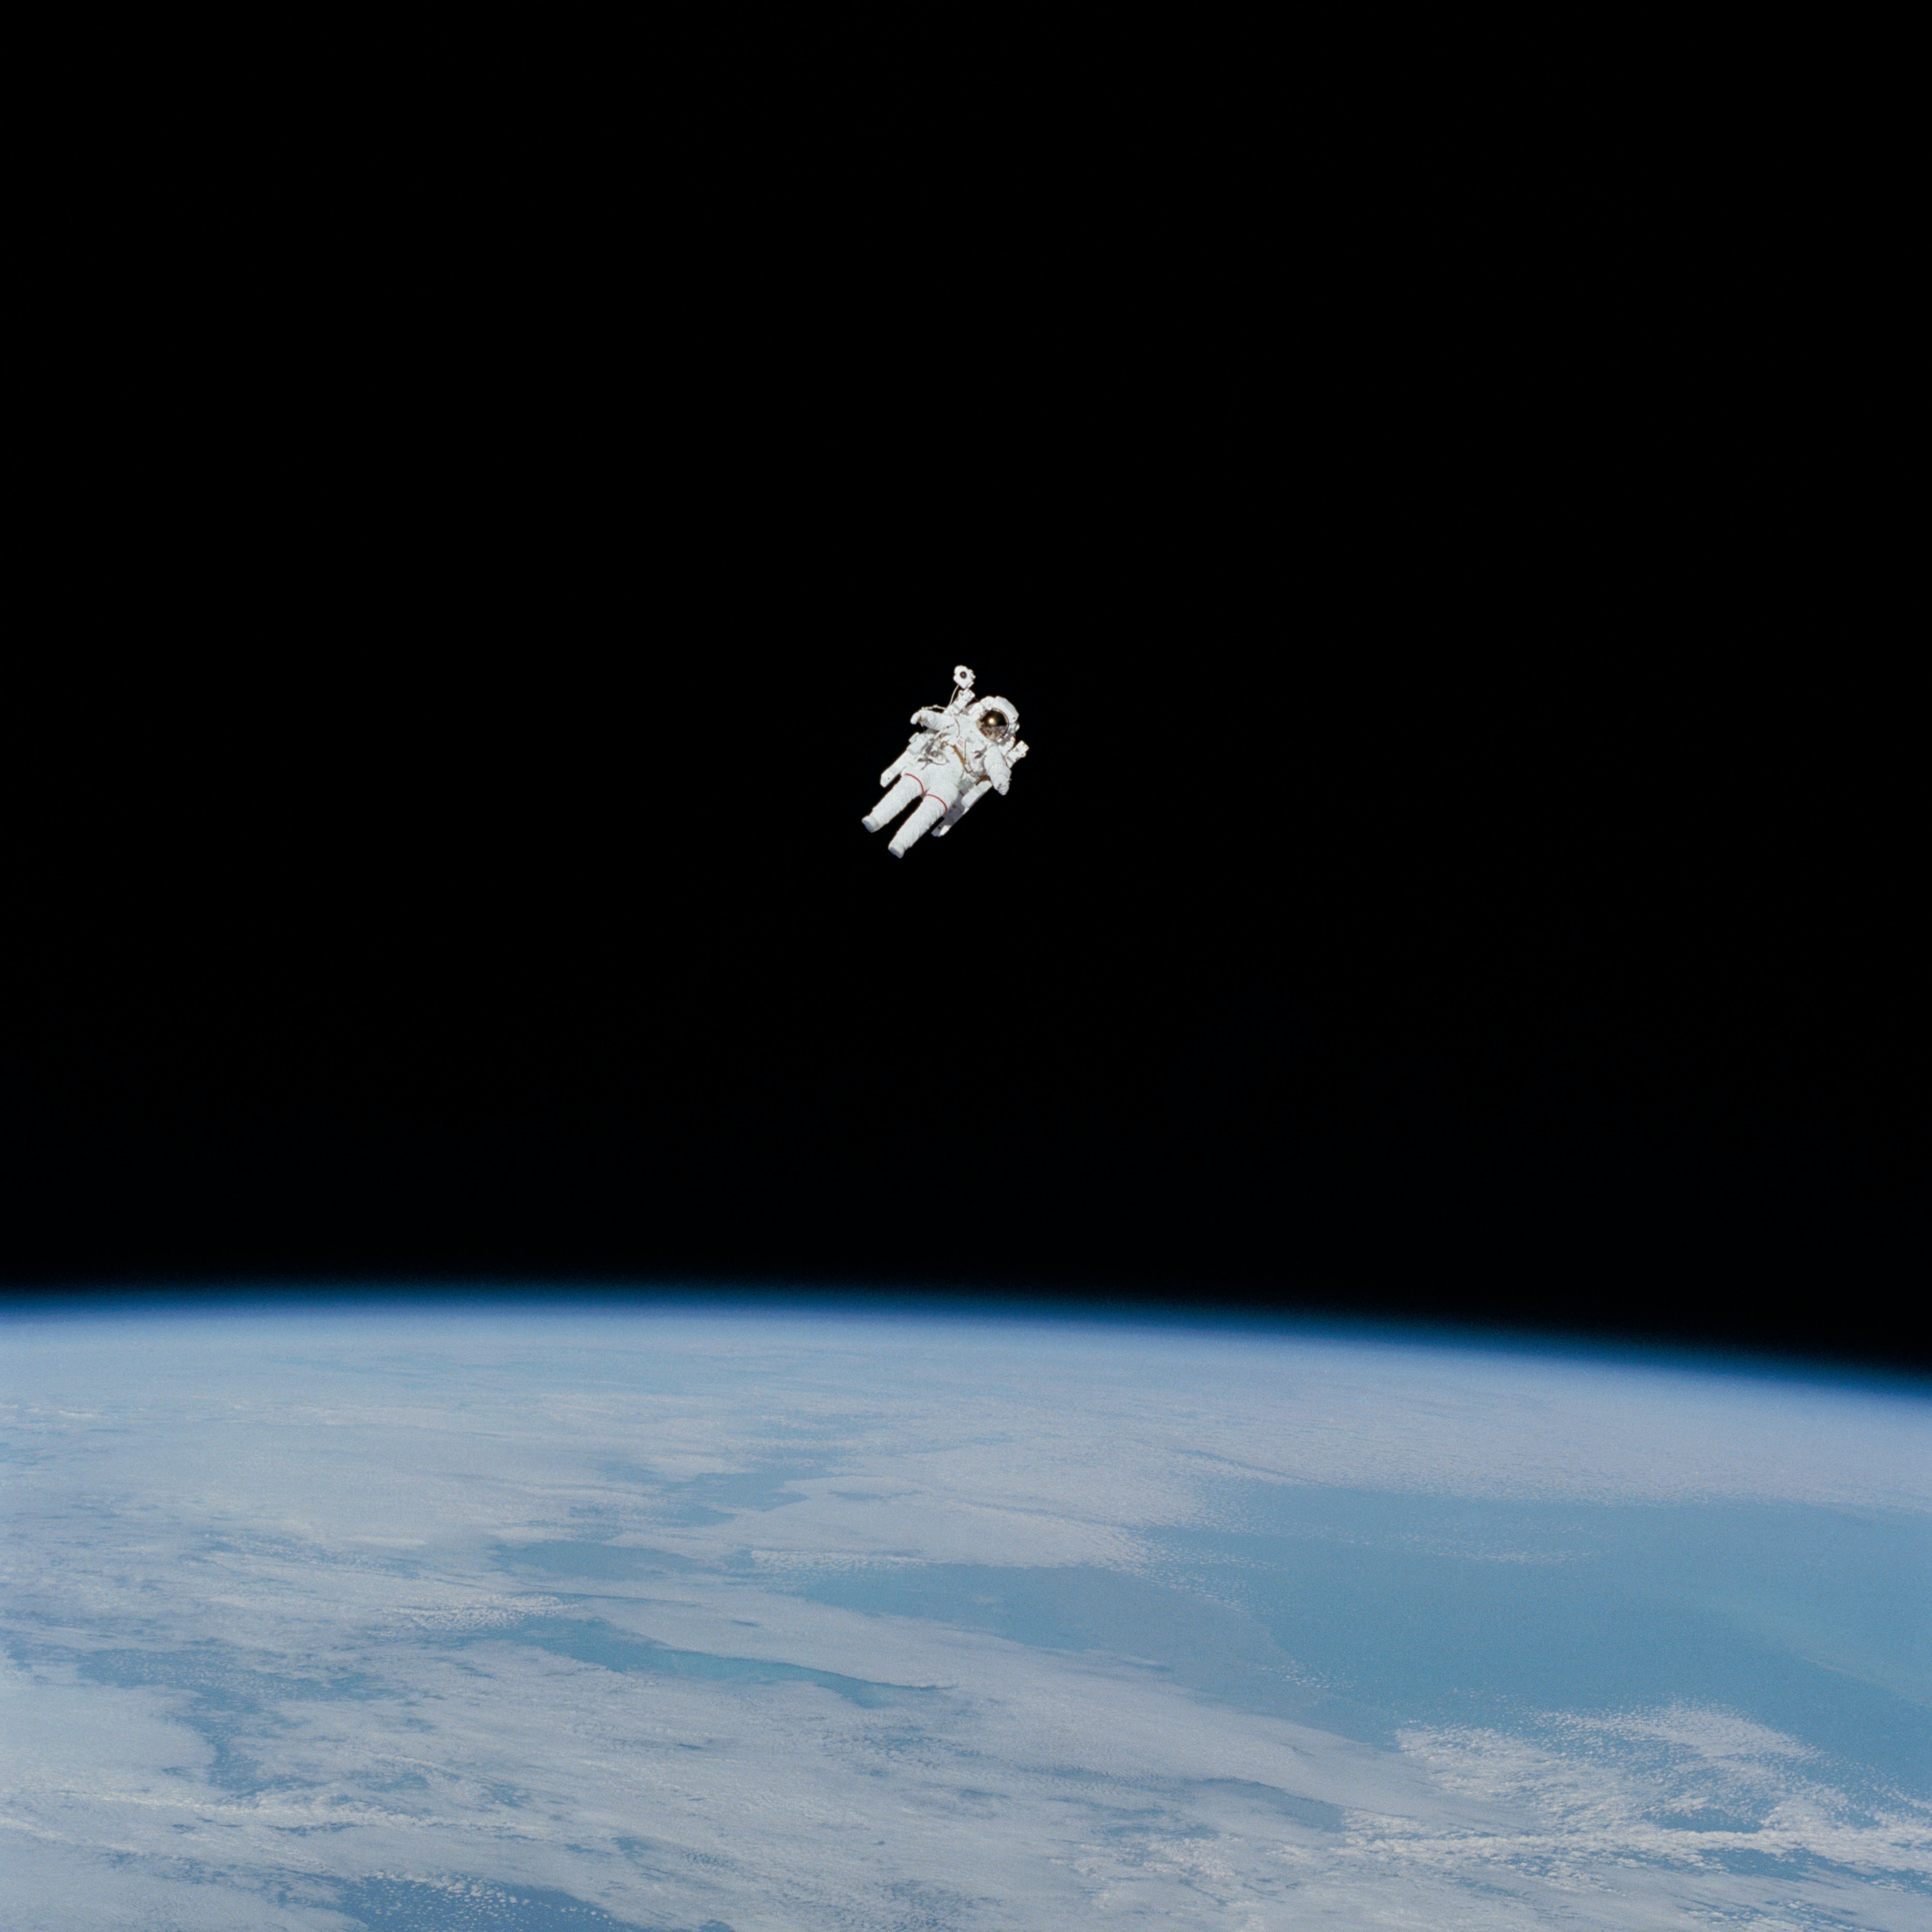 NASA image